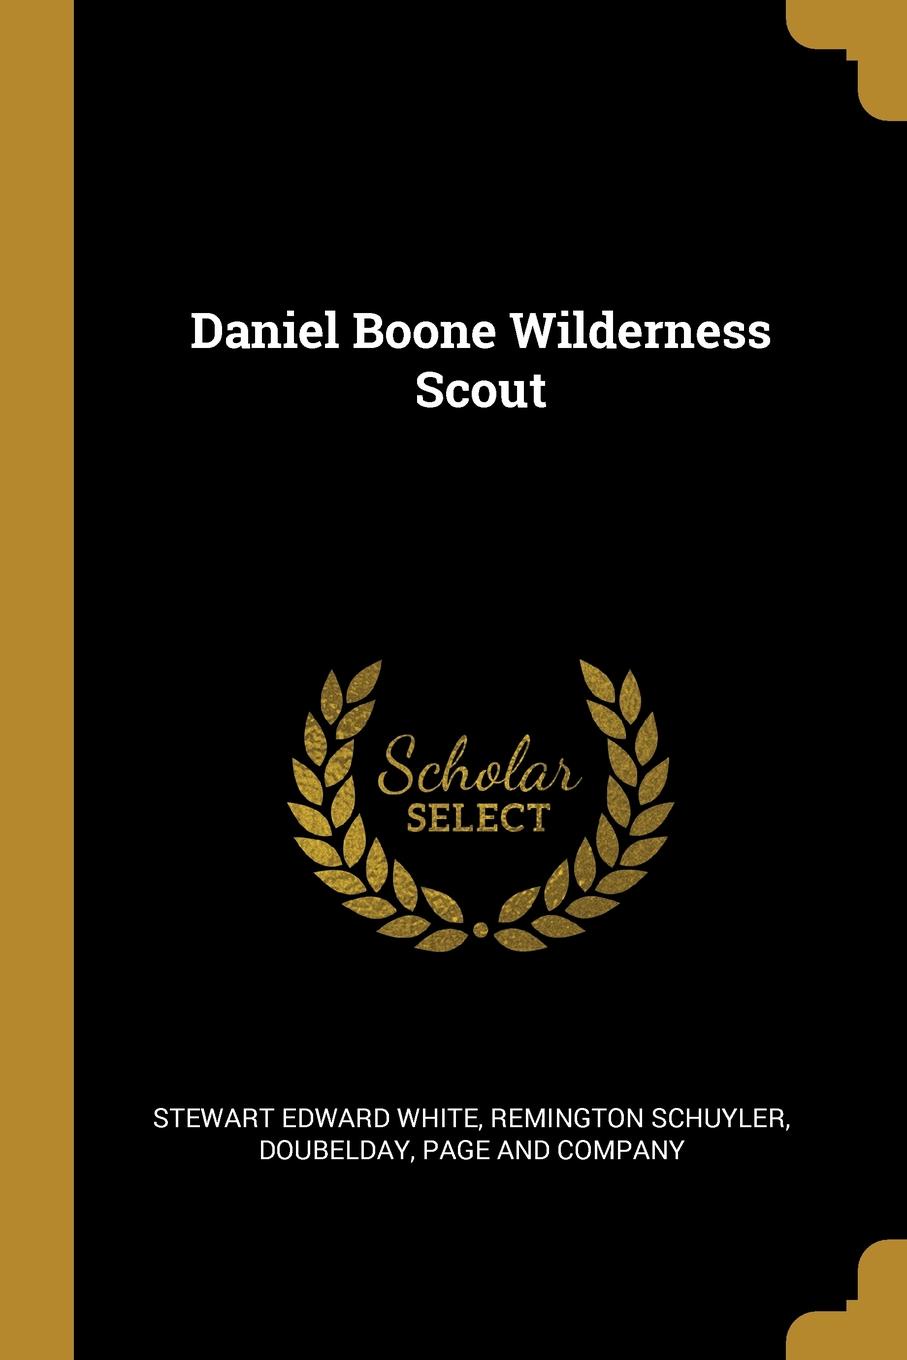 Daniel Boone Wilderness Scout